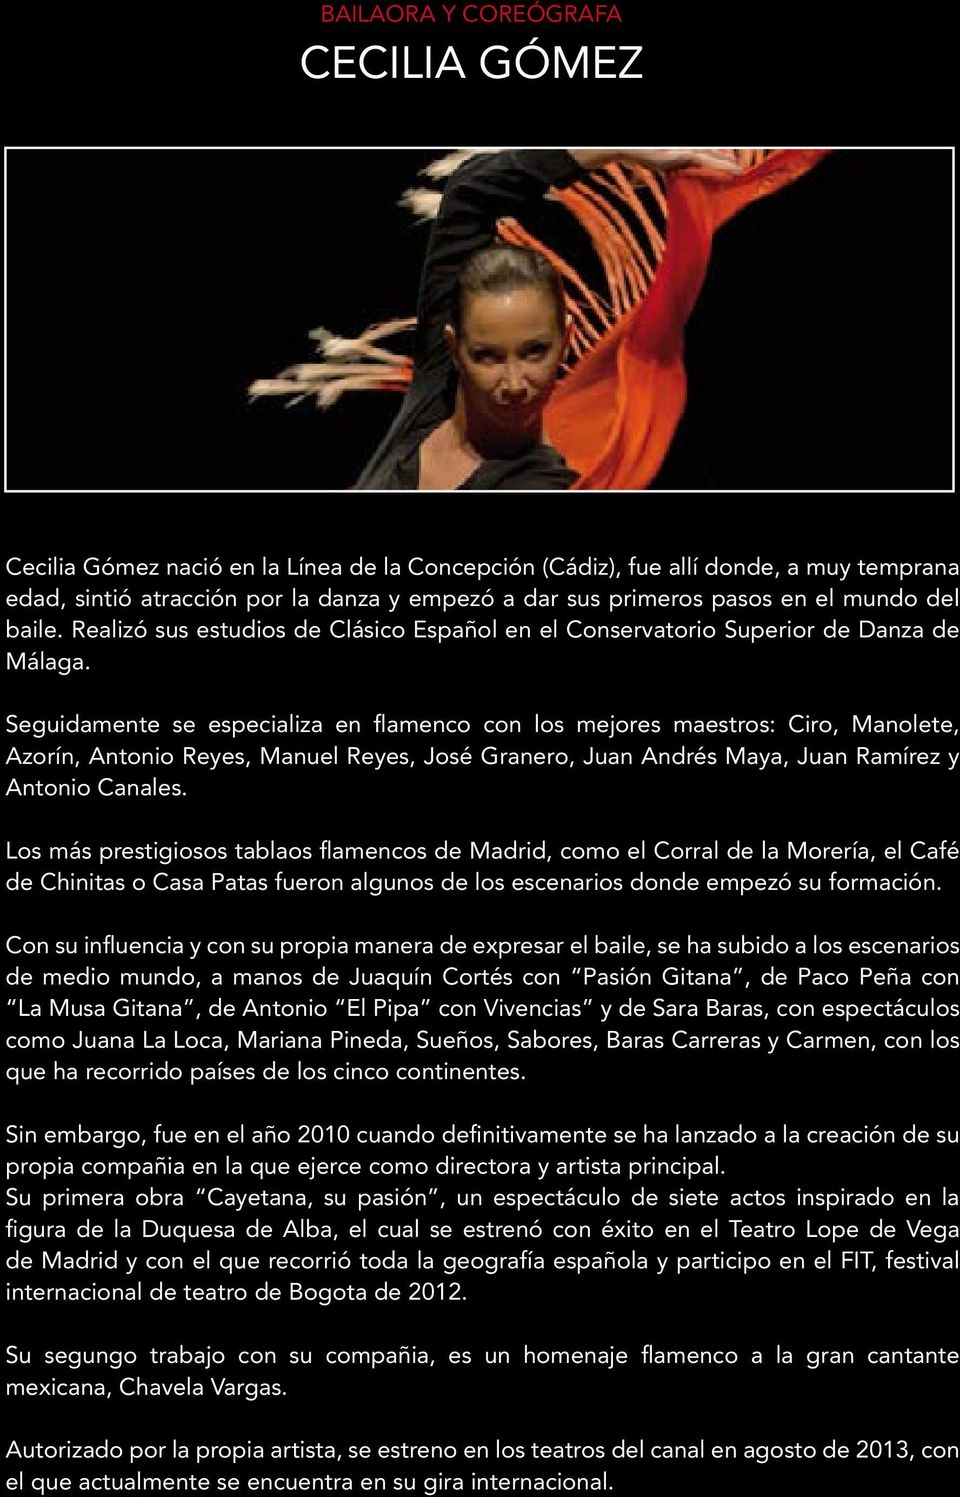 Seguidamente se especializa en flamenco con los mejores maestros: Ciro, Manolete, Azorín, Antonio Reyes, Manuel Reyes, José Granero, Juan Andrés Maya, Juan Ramírez y Antonio Canales.